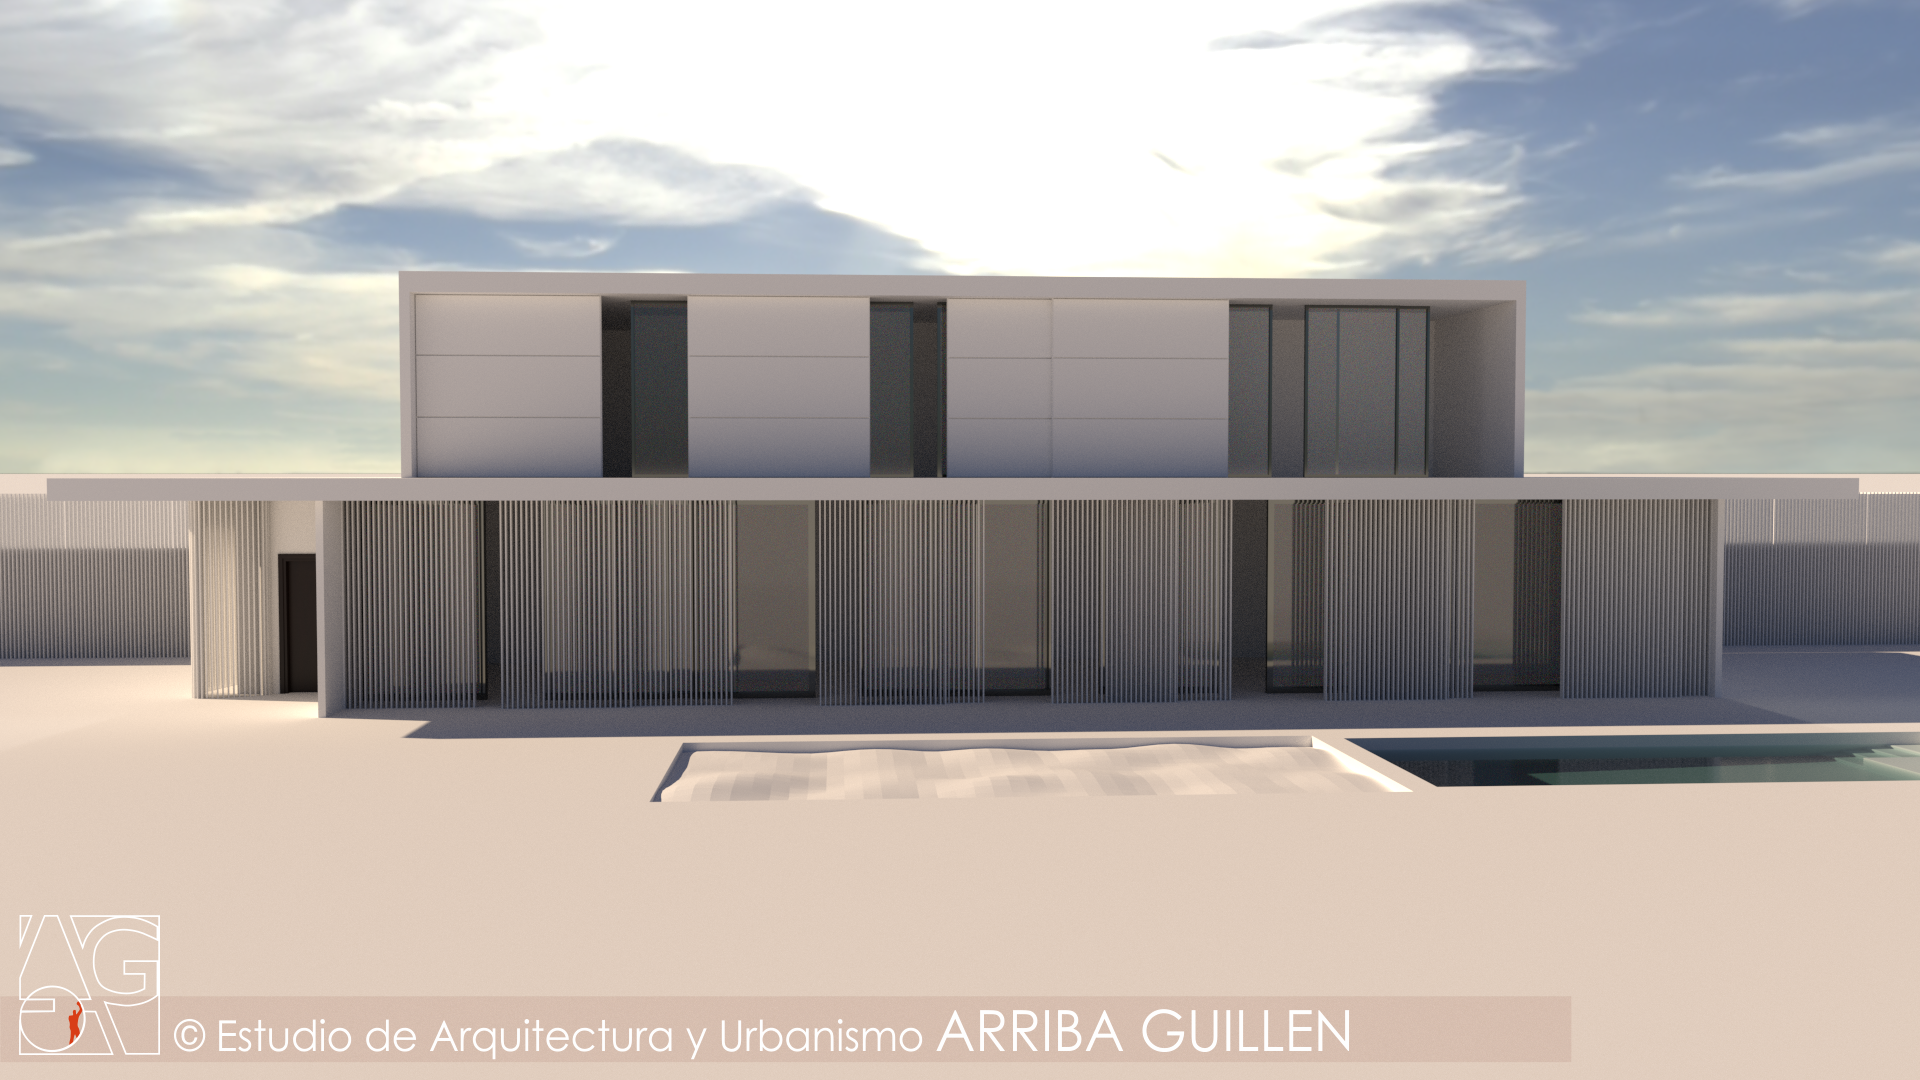 Images Estudio De Arquitectura Arriba Guillén